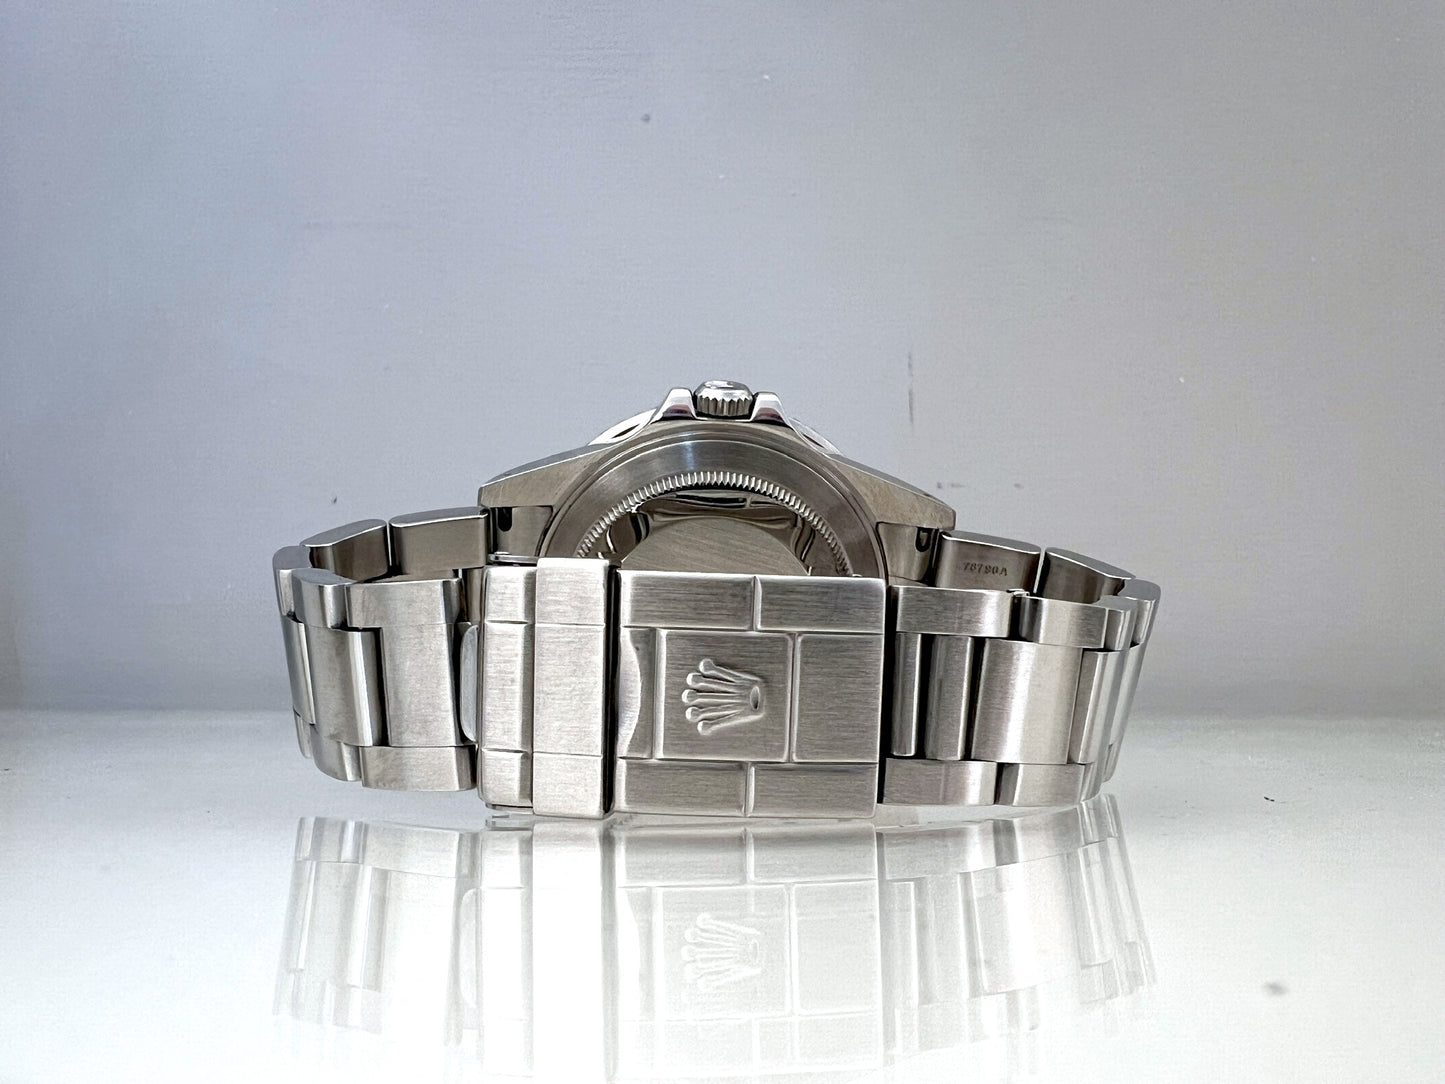 RoleX GMT 16710 Full set SEL bracelet